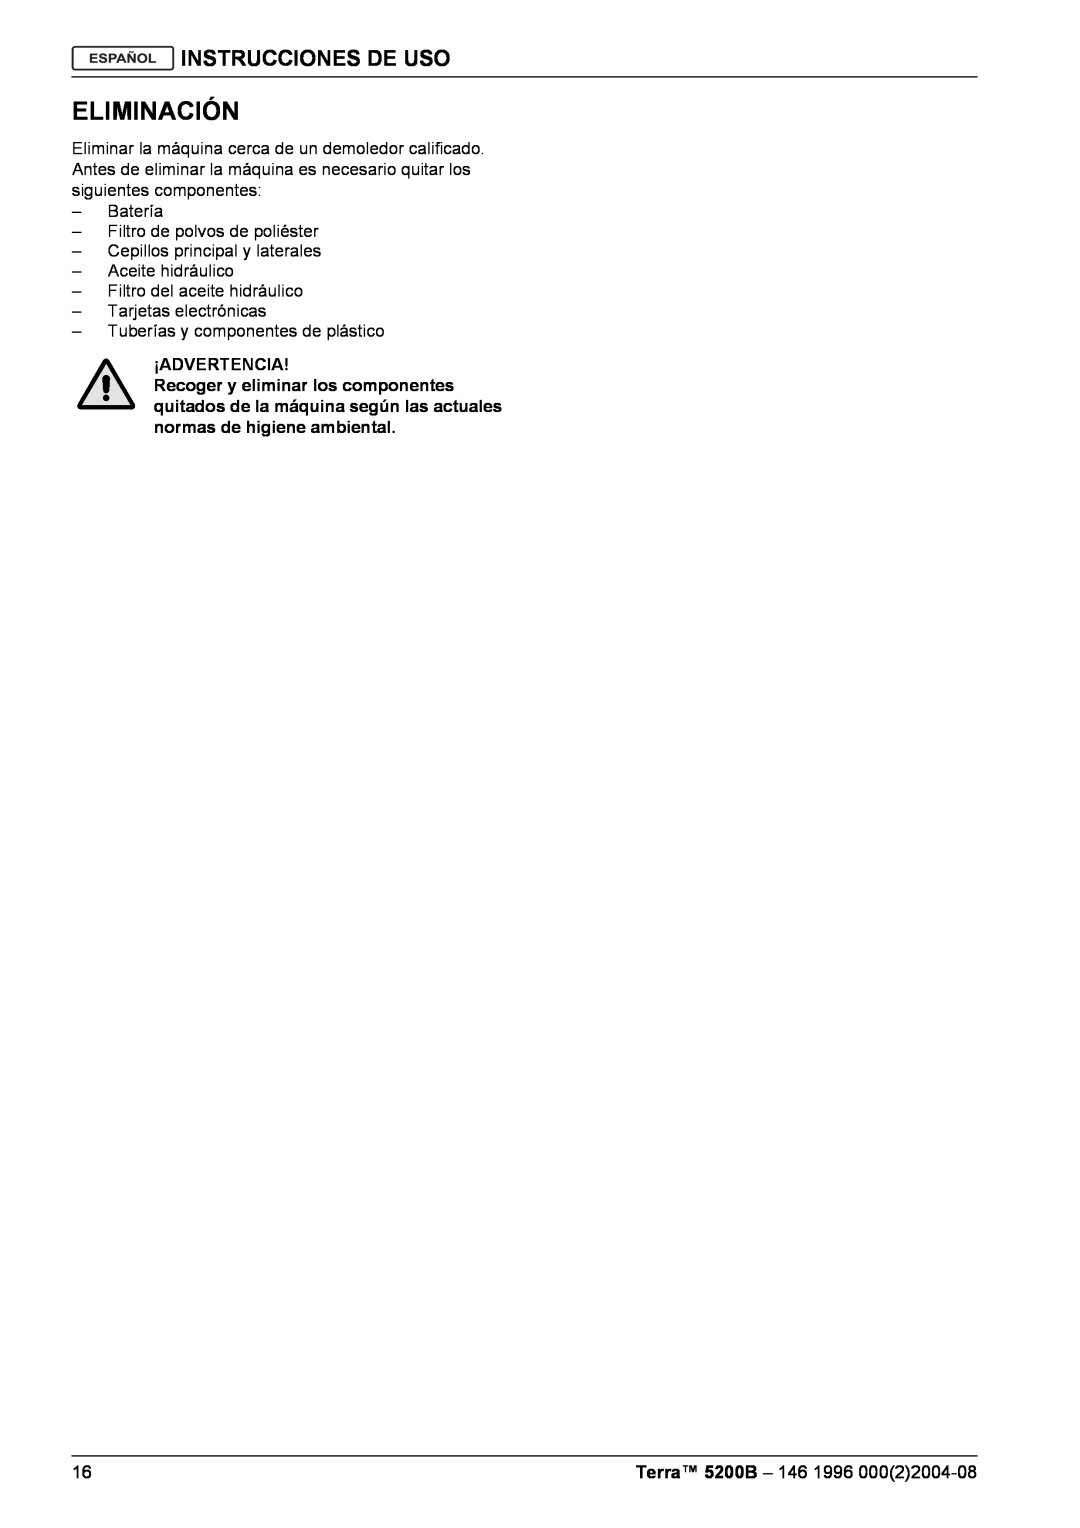 Nilfisk-Advance America 5200B manual Eliminación, Instrucciones De Uso, ¡Advertencia 